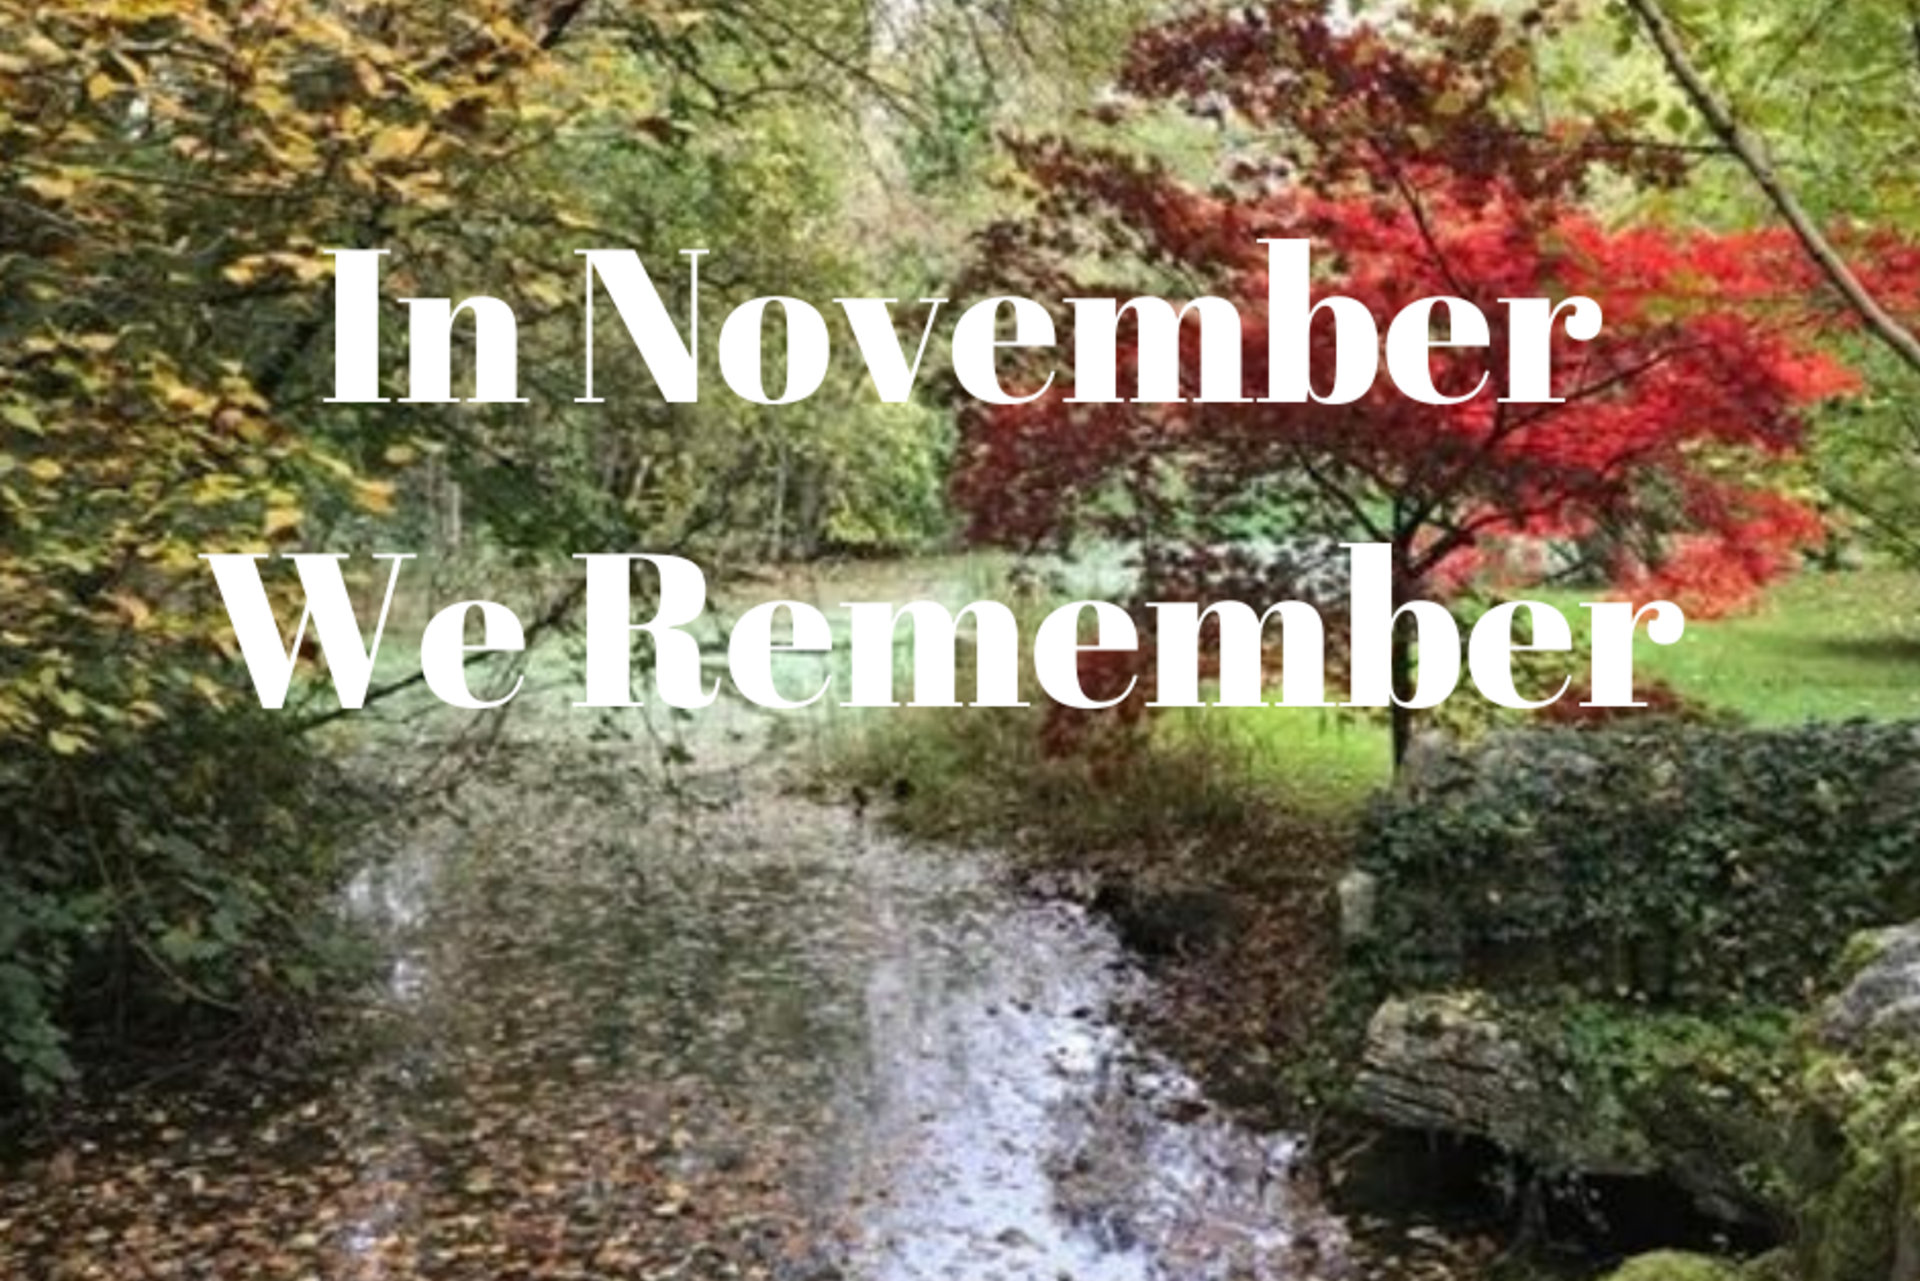 In November We Remember